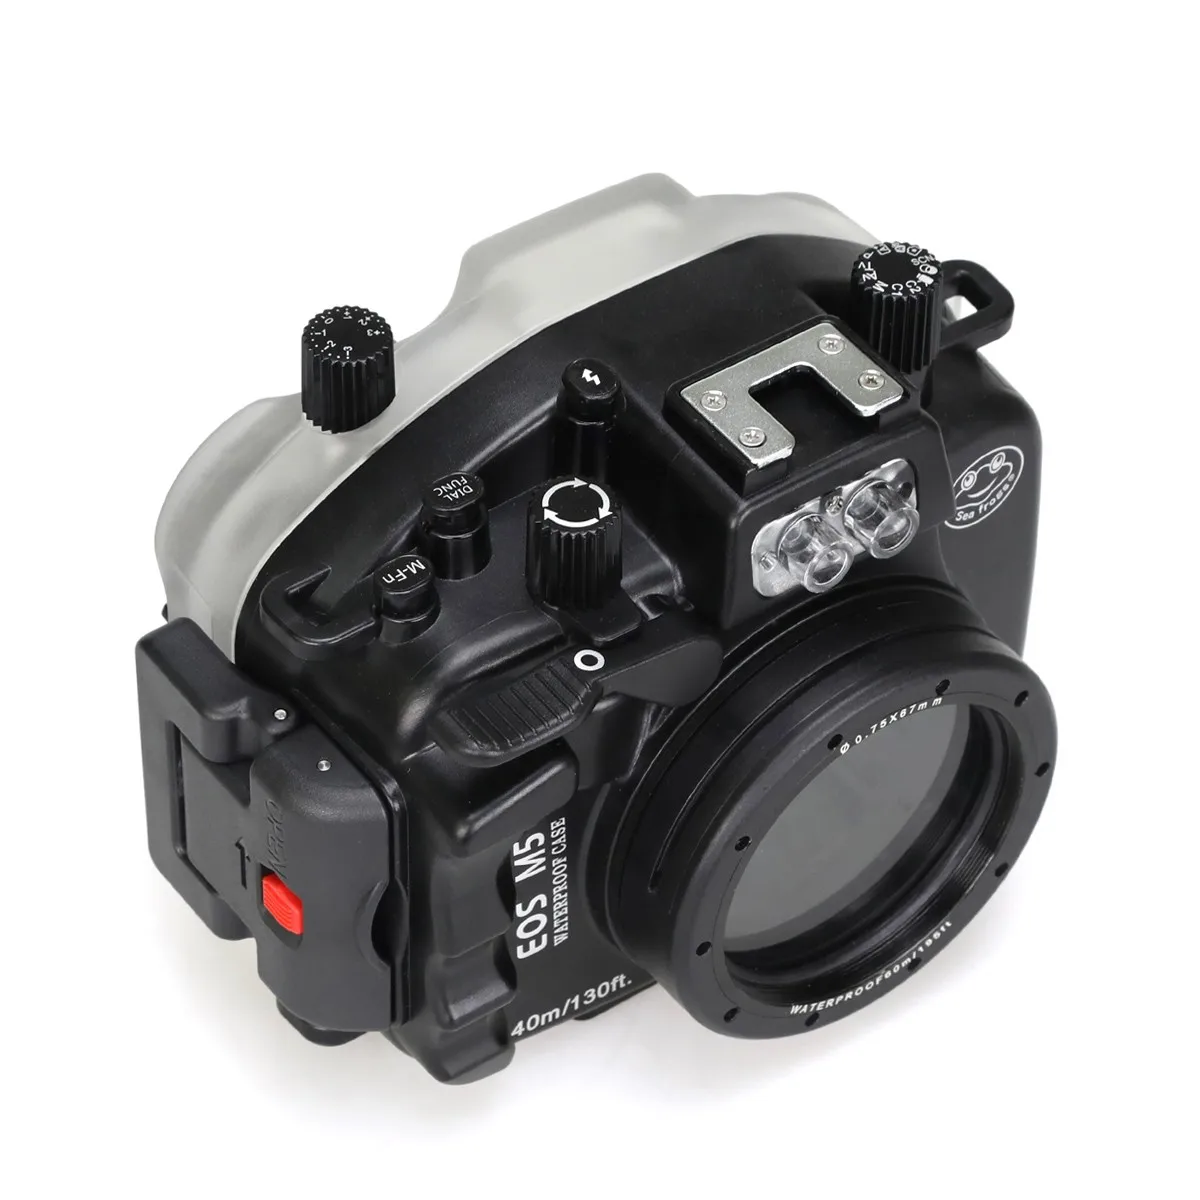 Meikon 40 м/130ft подводный Камера Дайвинг Корпус для цифровой однообъективной зеркальной камеры Canon EOS M5 22 мм объектив